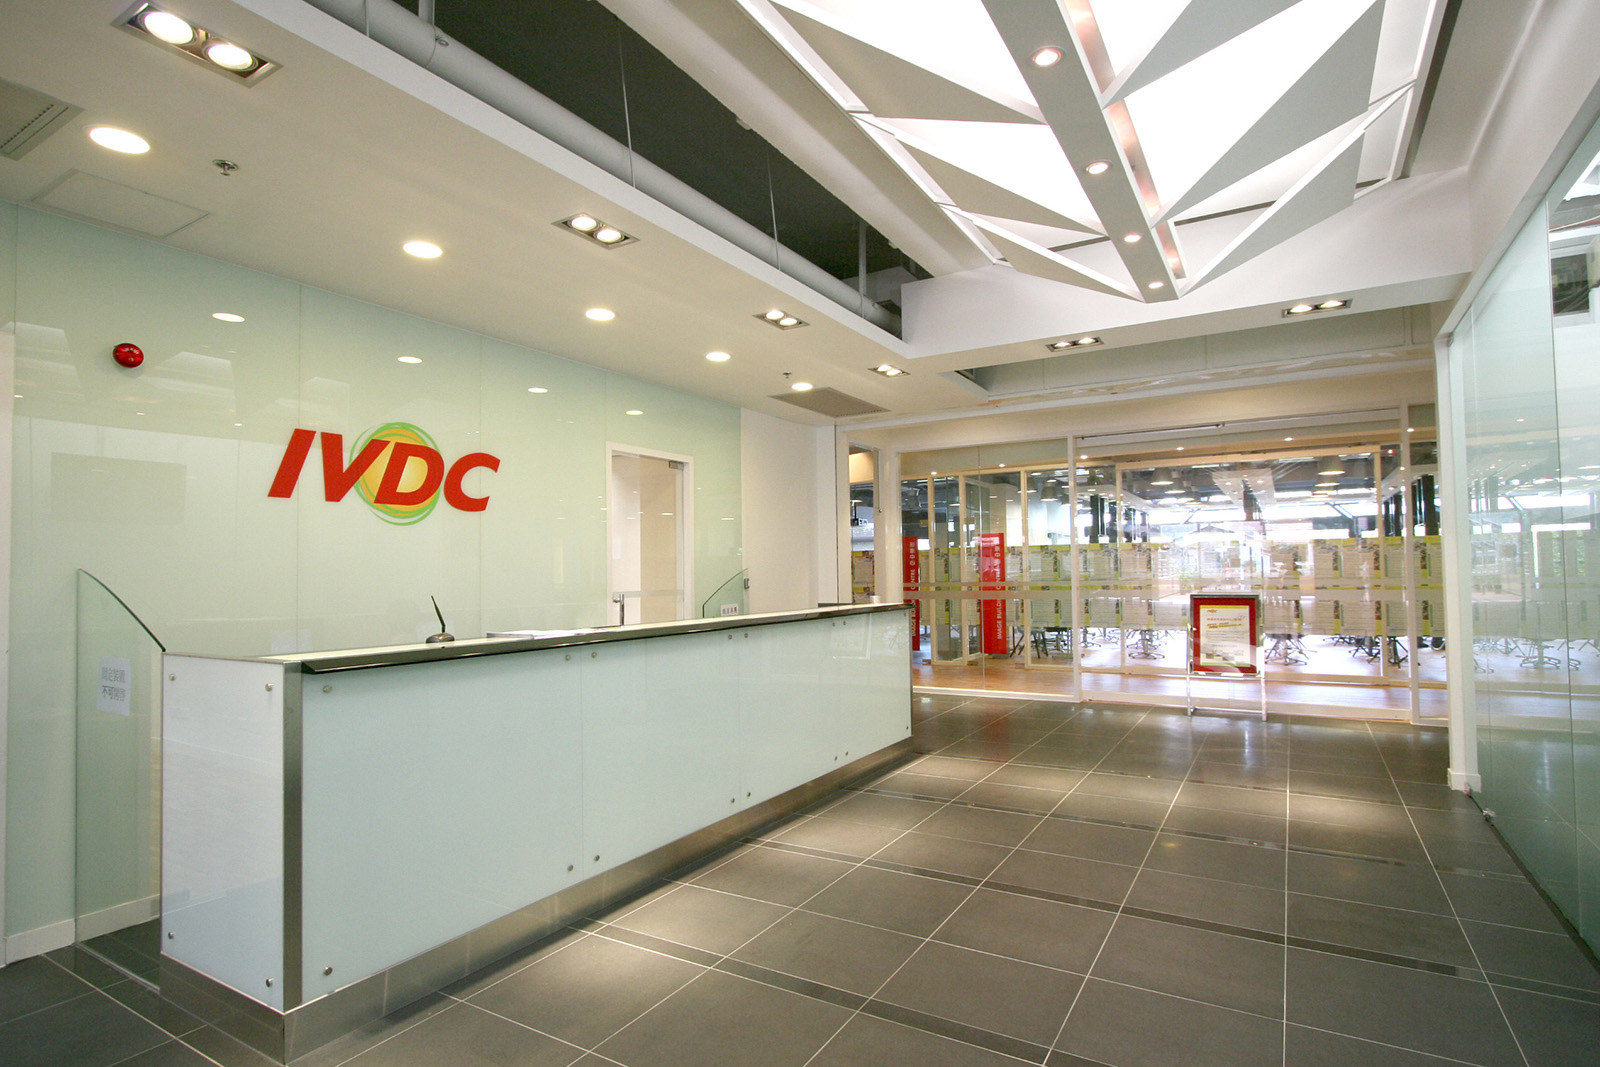 IVDC Office